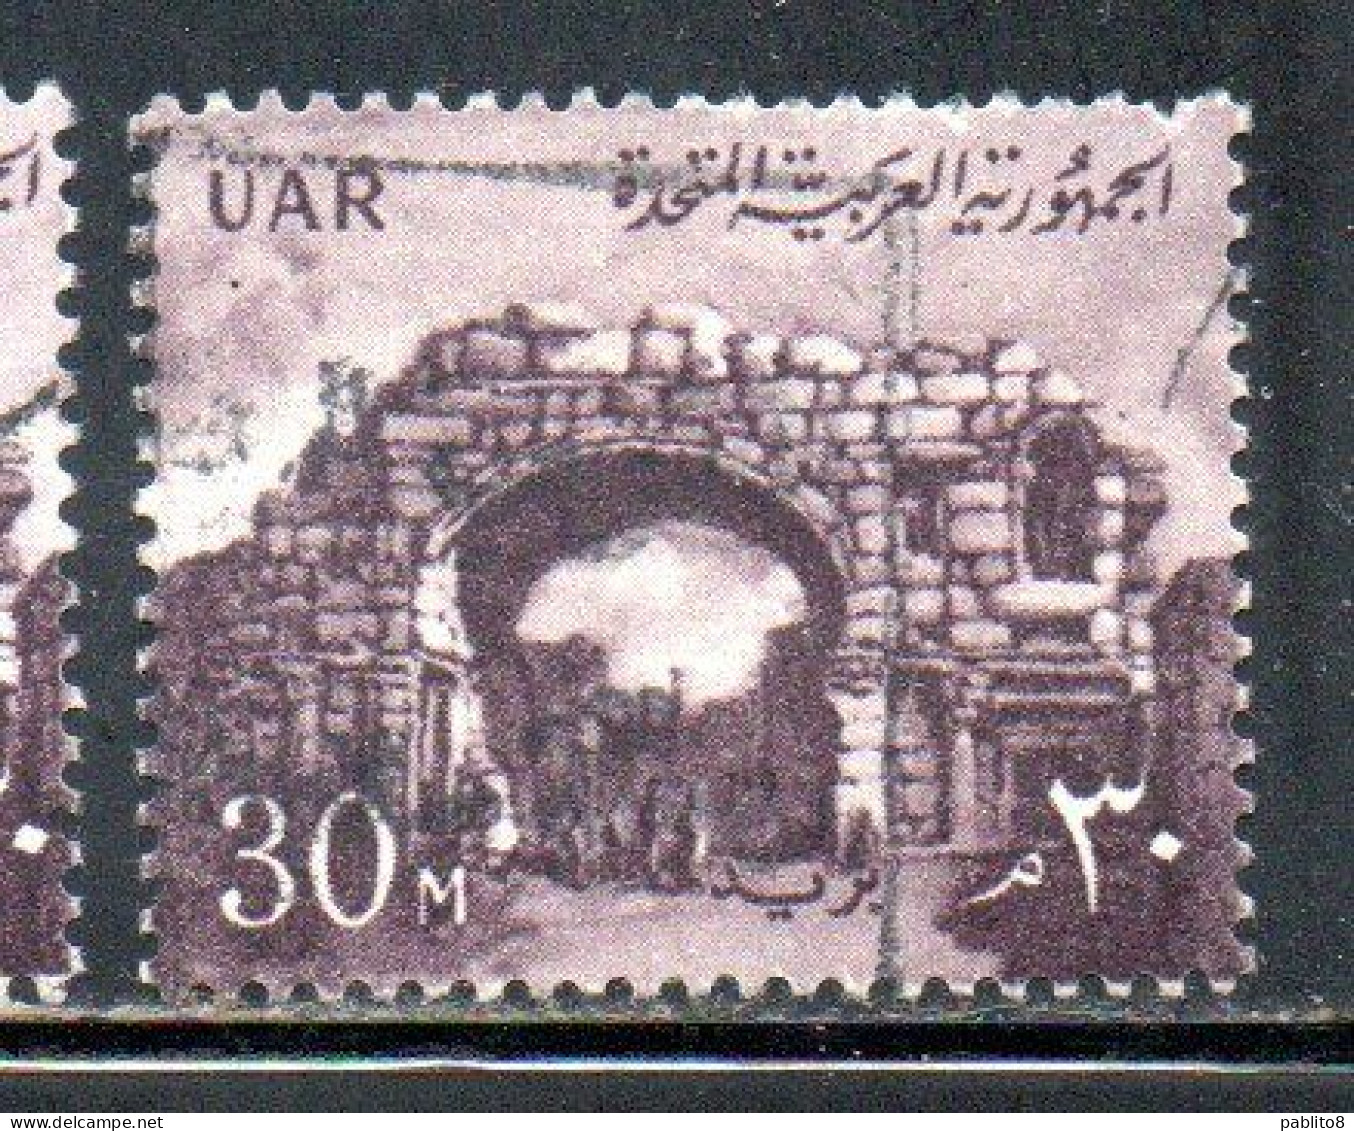 UAR EGYPT EGITTO 1959 1960 ST. SIMON'S GATE BOSRA SYRIA  30m USED USATO OBLITERE' - Gebraucht